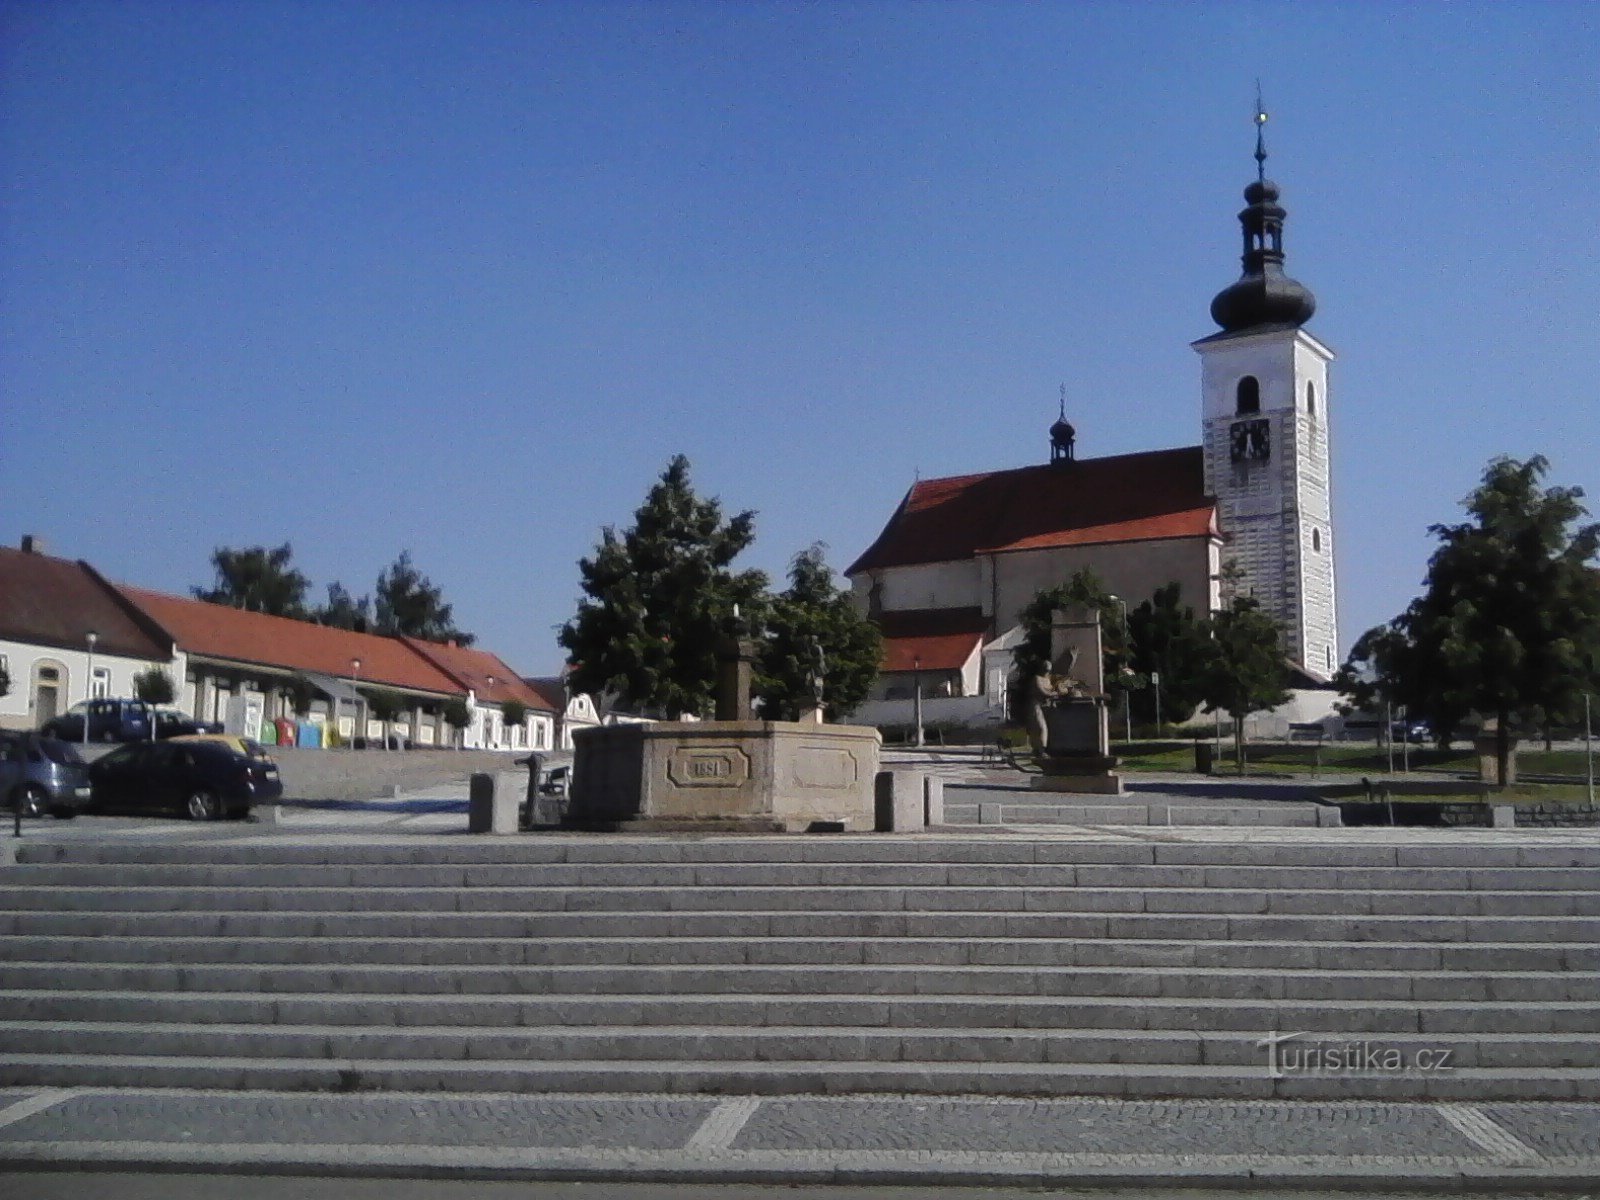 2. Église de St. Vavřinec in Prčica est d'origine romane, elle a été fondée au XIIe, peut-être en